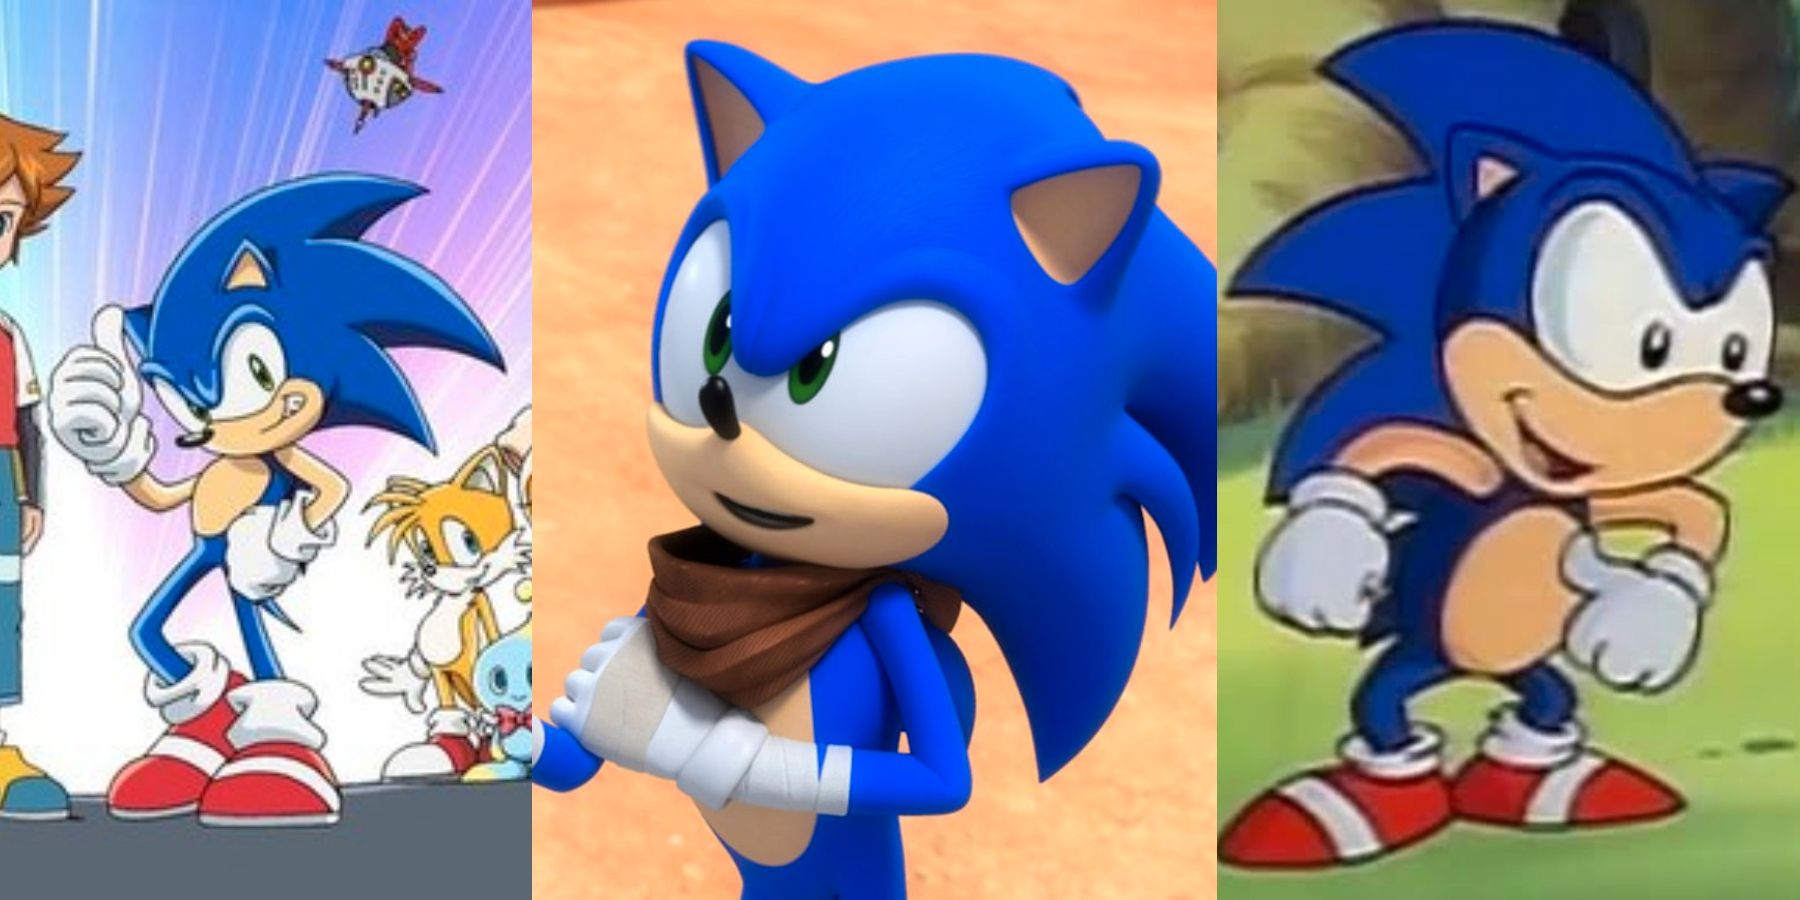 Sonic Prime: cómo el nuevo programa de Sonic puede aprender de los pasos en falso de Sonic anteriores